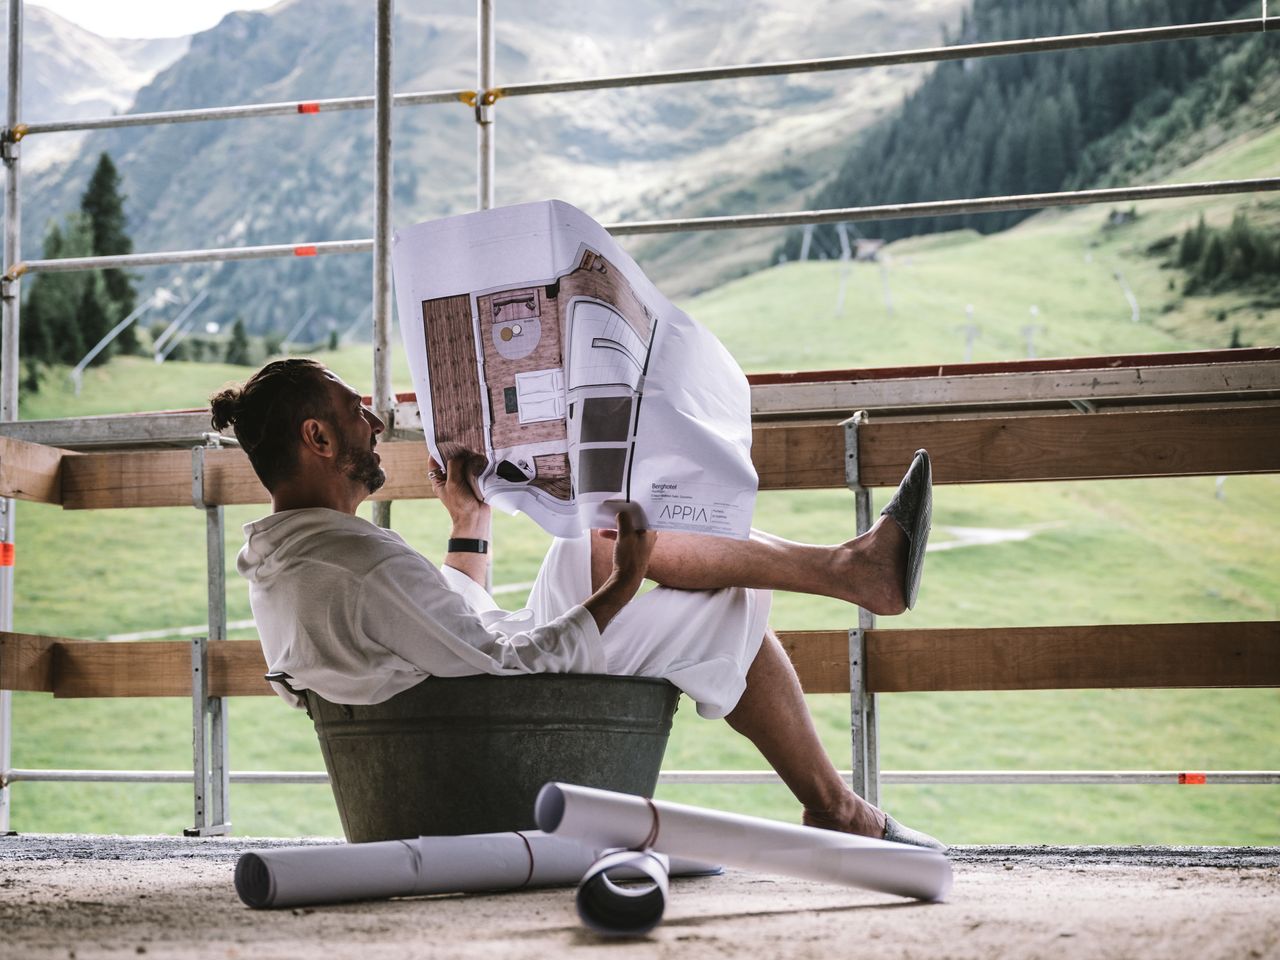 8 entspannte Wellnesstage im Tiroler Zillertal